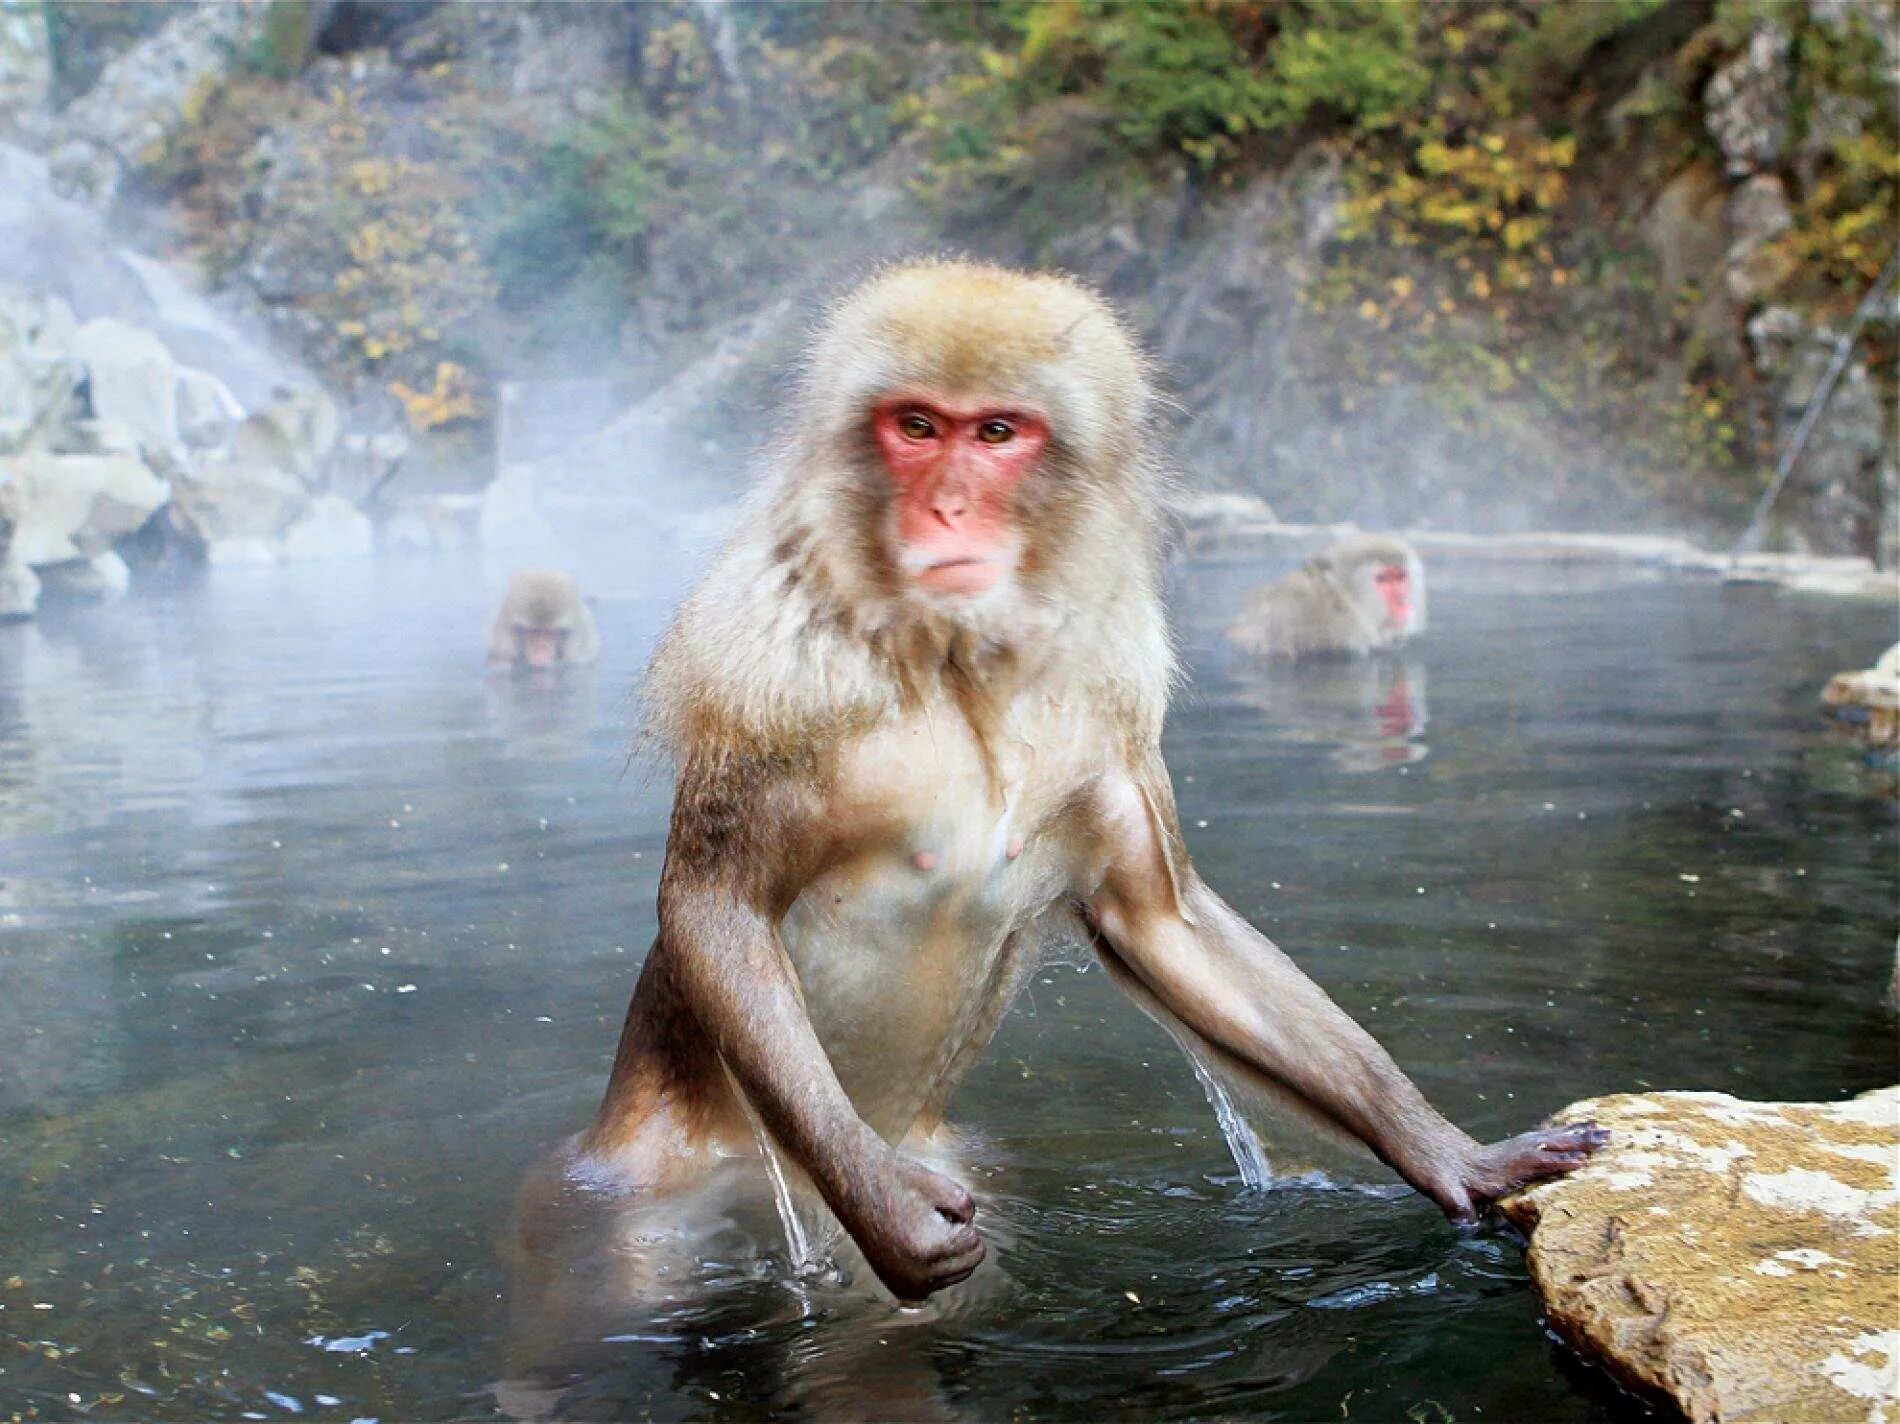 Обезьяна в кипятке. Водяная обезьяна. Японские обезьяны. Обезьяны в термальных источниках. Обезьяна в воде.